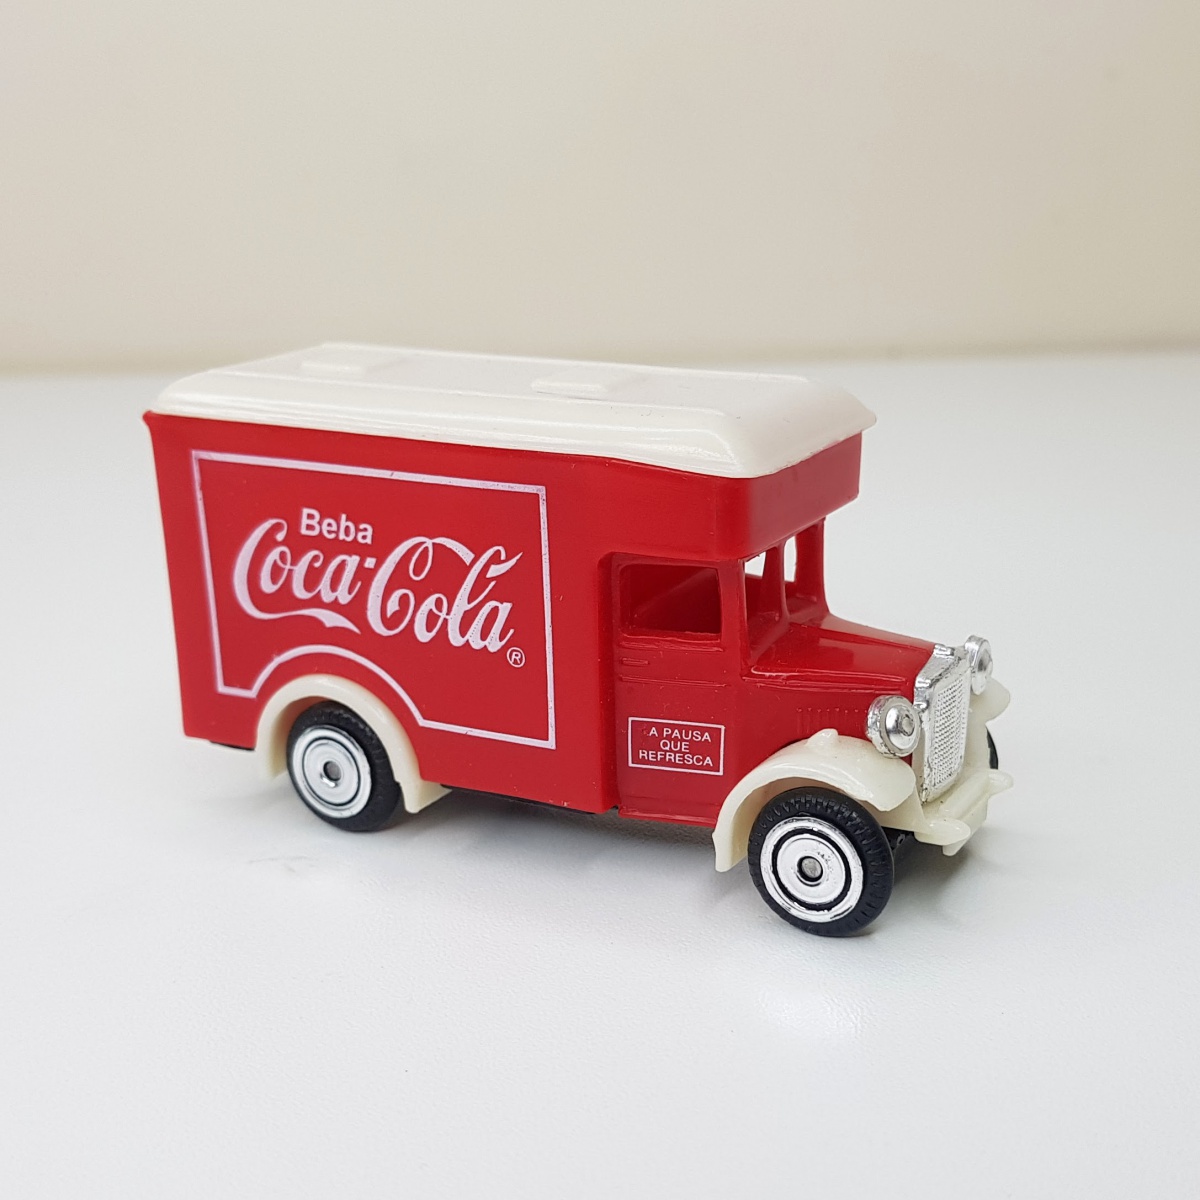 Antigo Caminhão Coca Cola Miniatura Plástico 17cm